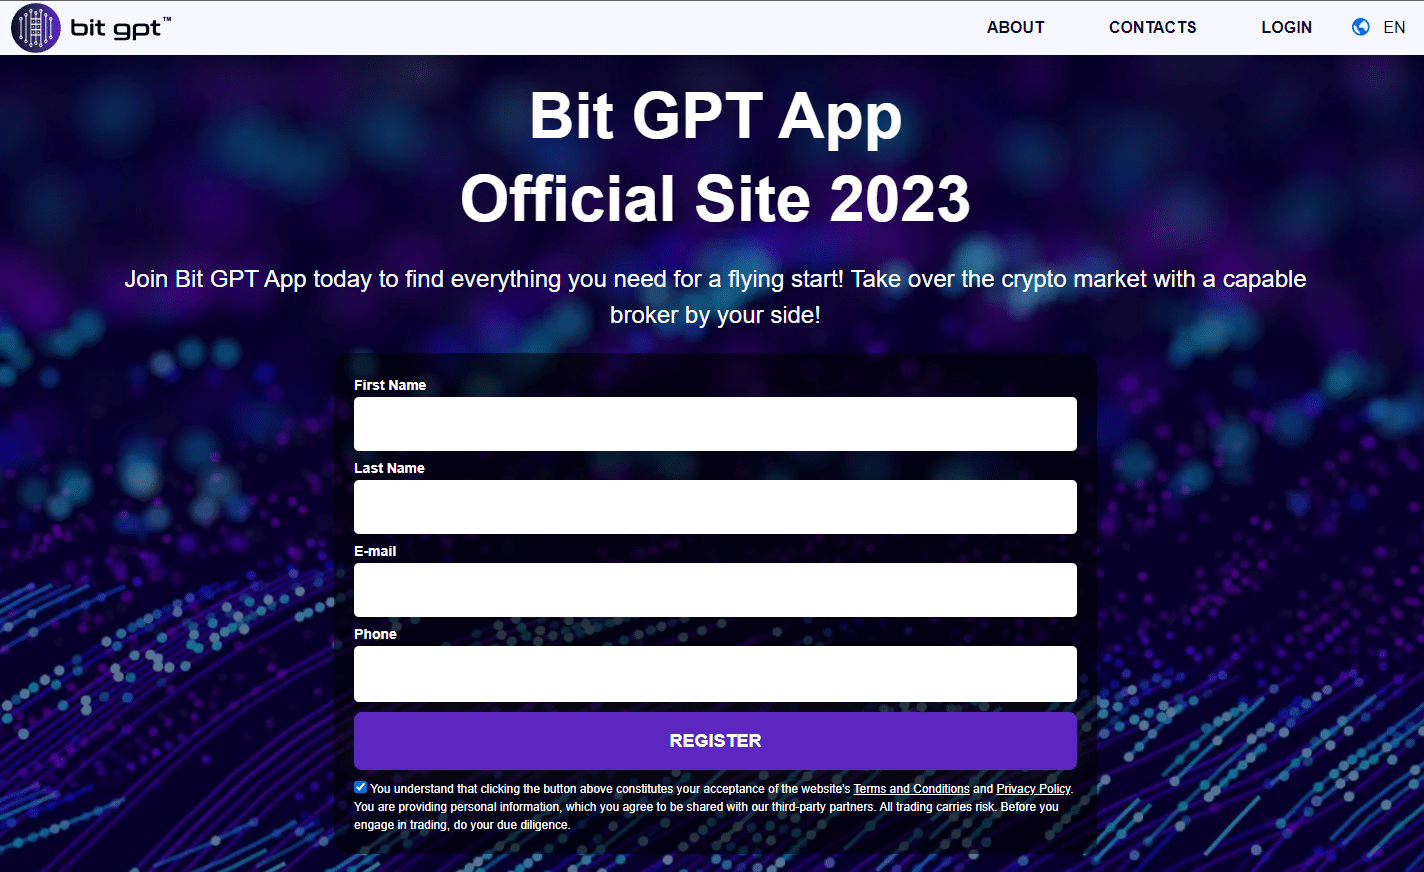 Another Bit GPT app website